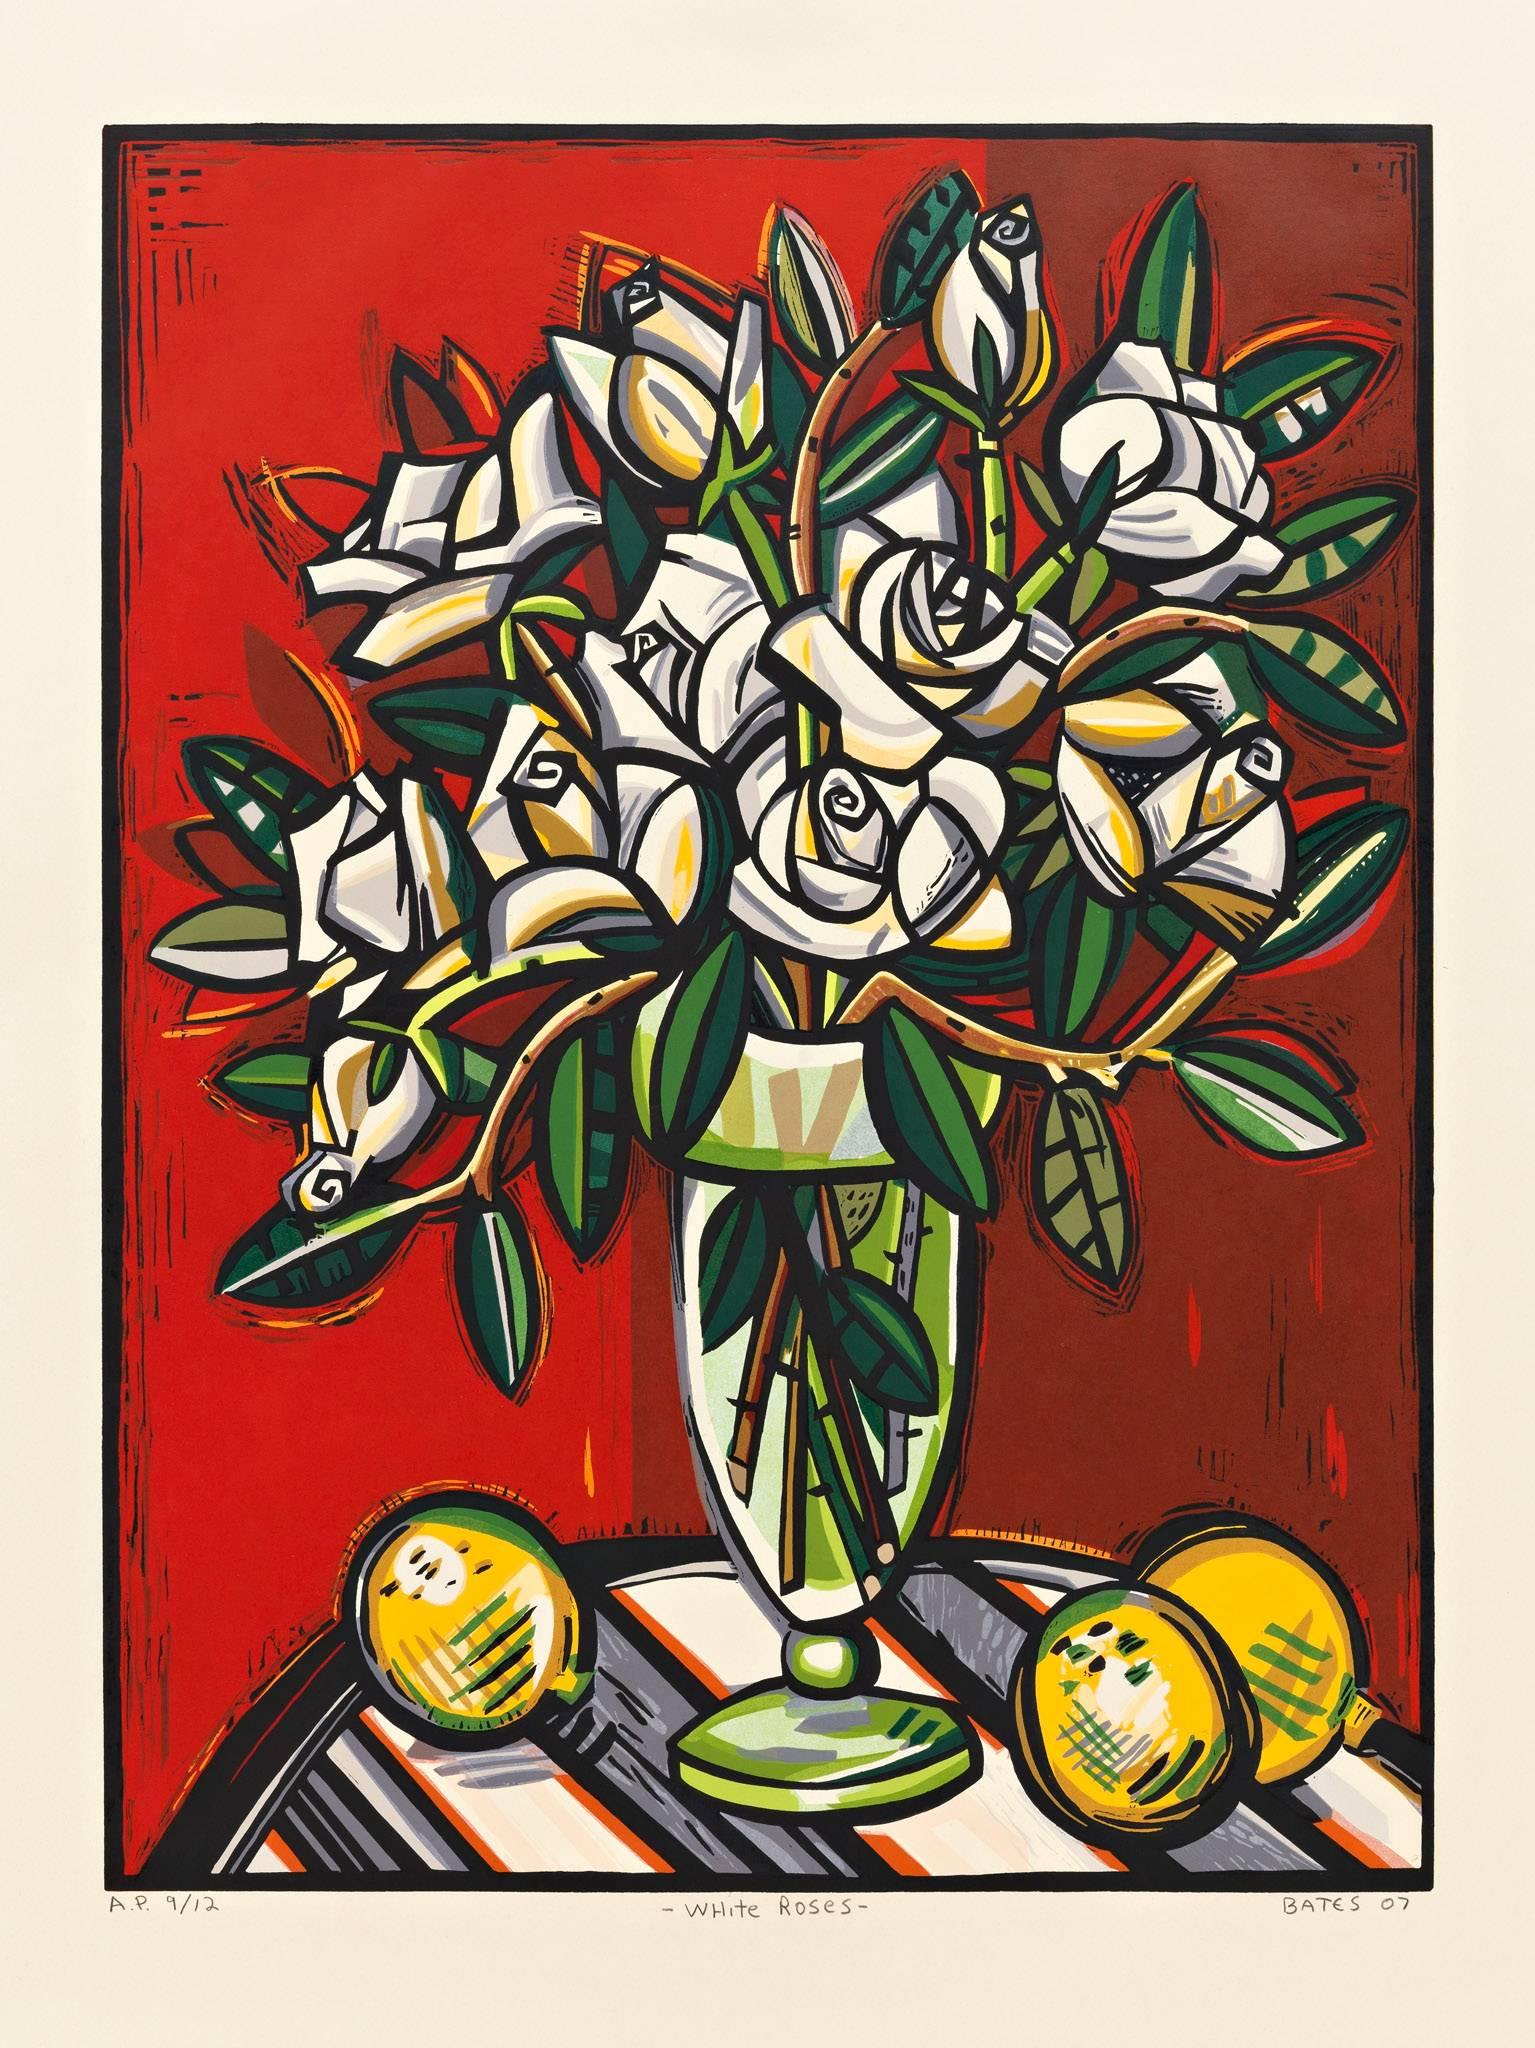 White Roses - Print by David Bates b.1952